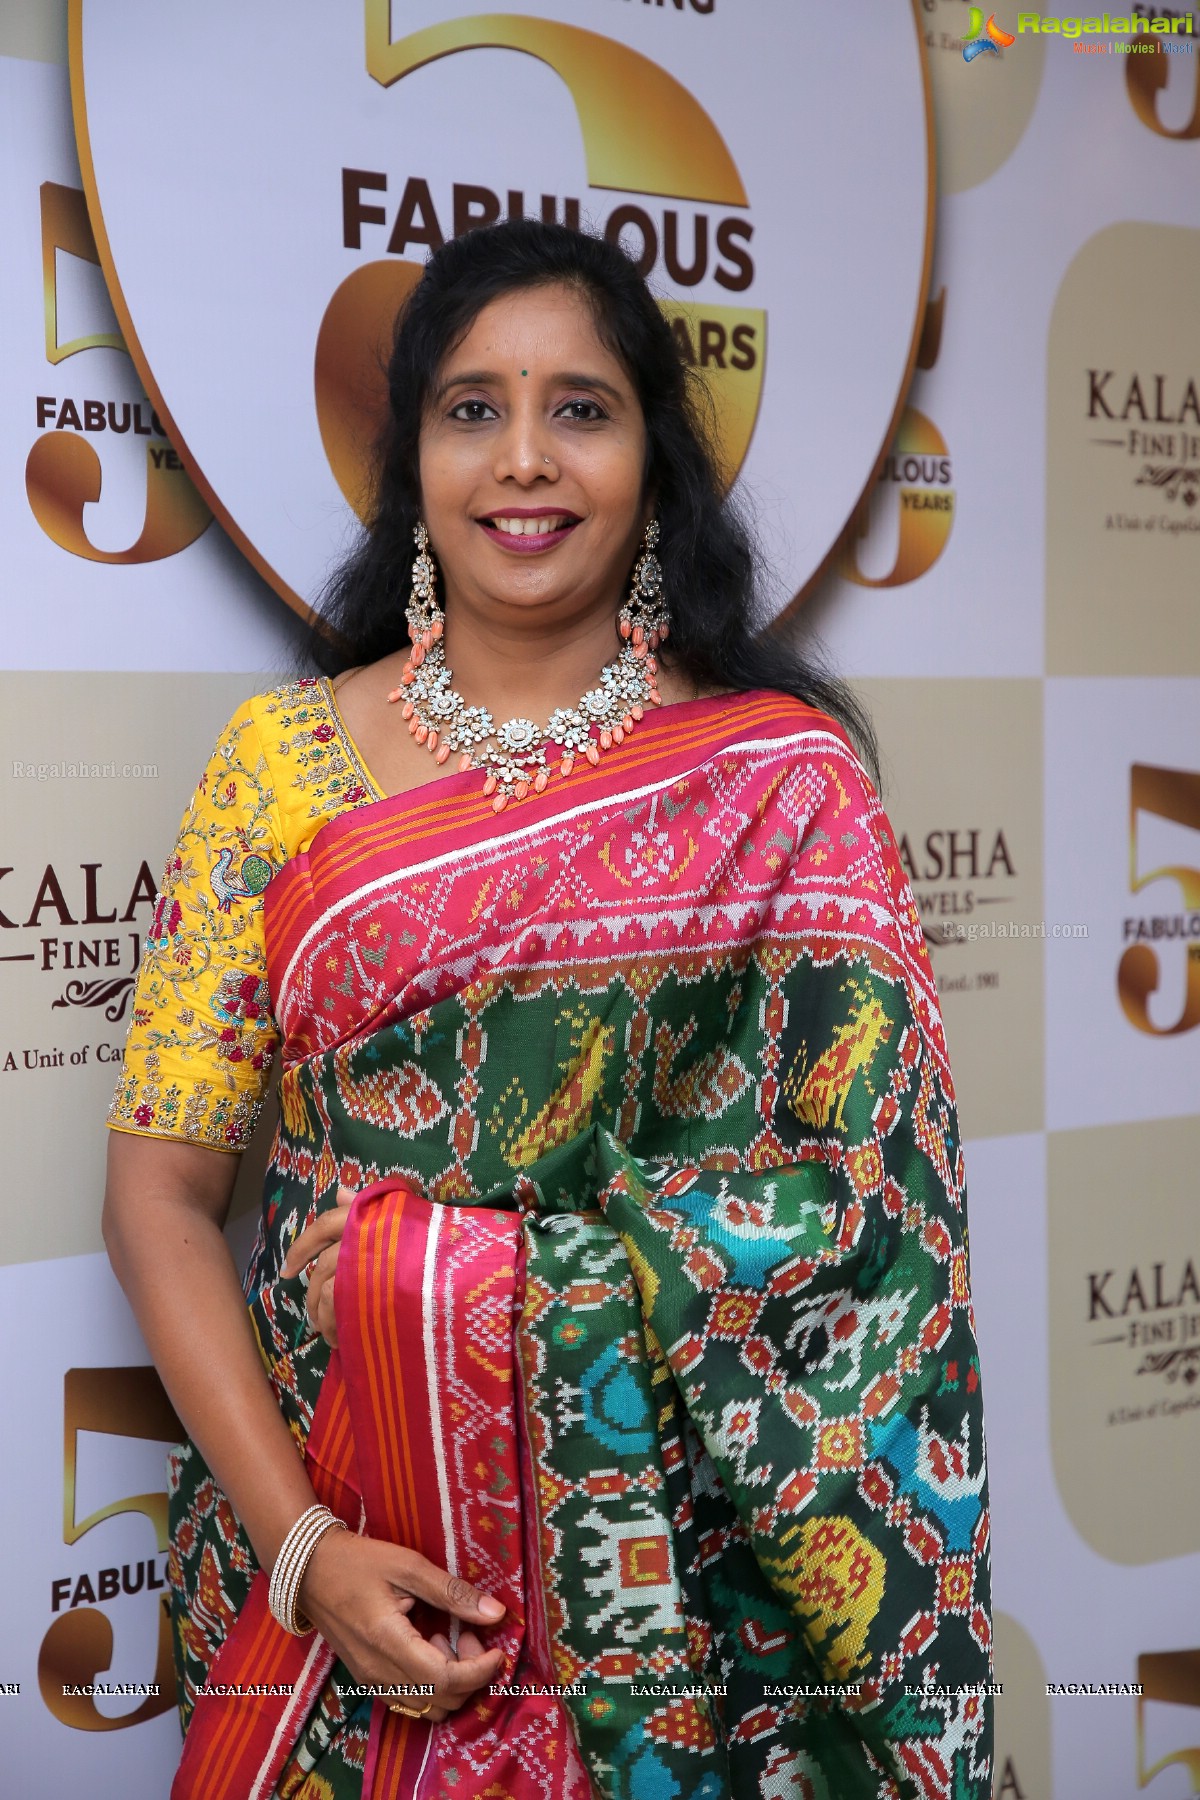 Kalasha Fine Jewels Celebrates its 5th Anniversary